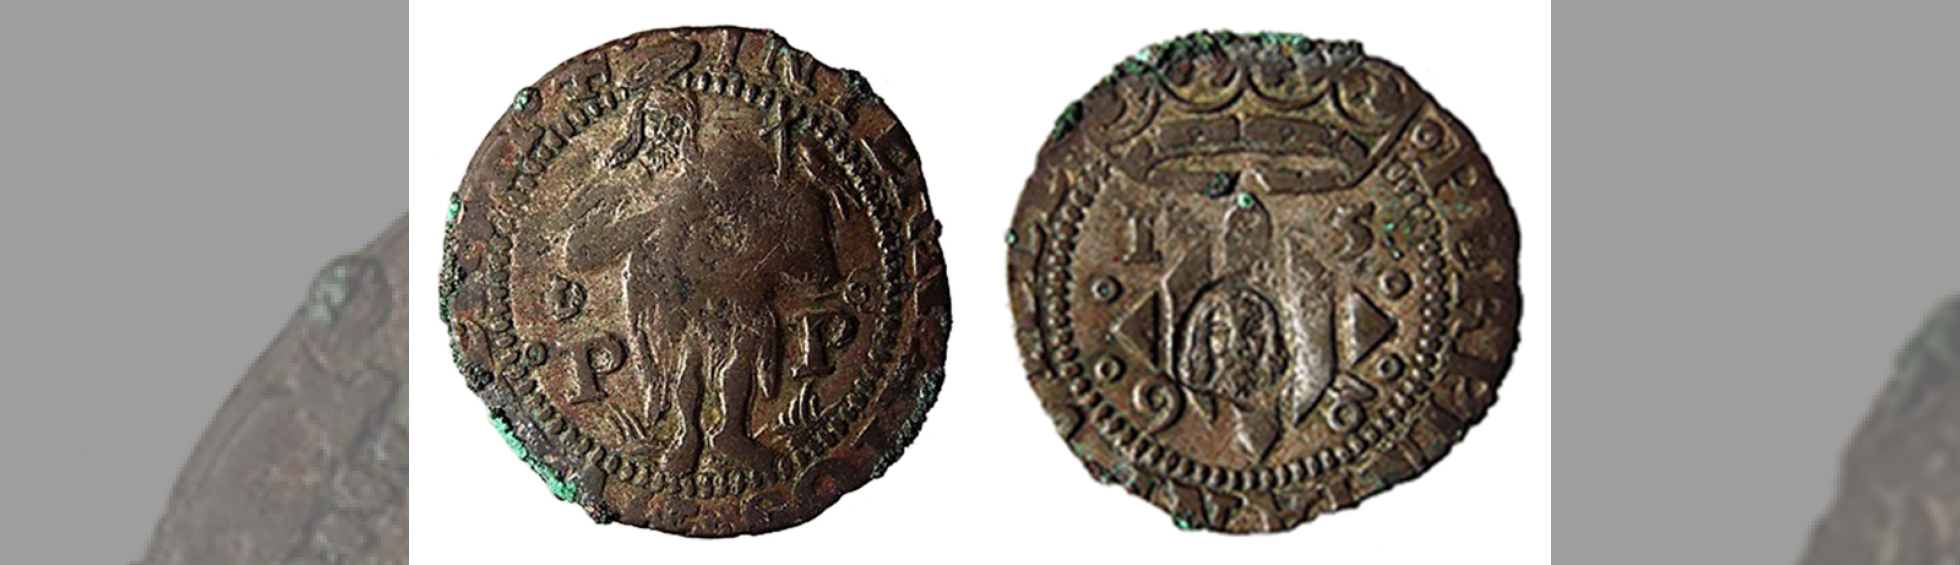 Photo couleur du double sol ou sol double datant du XVe siècle - Musée des monnaies et médailles Joseph Puig 